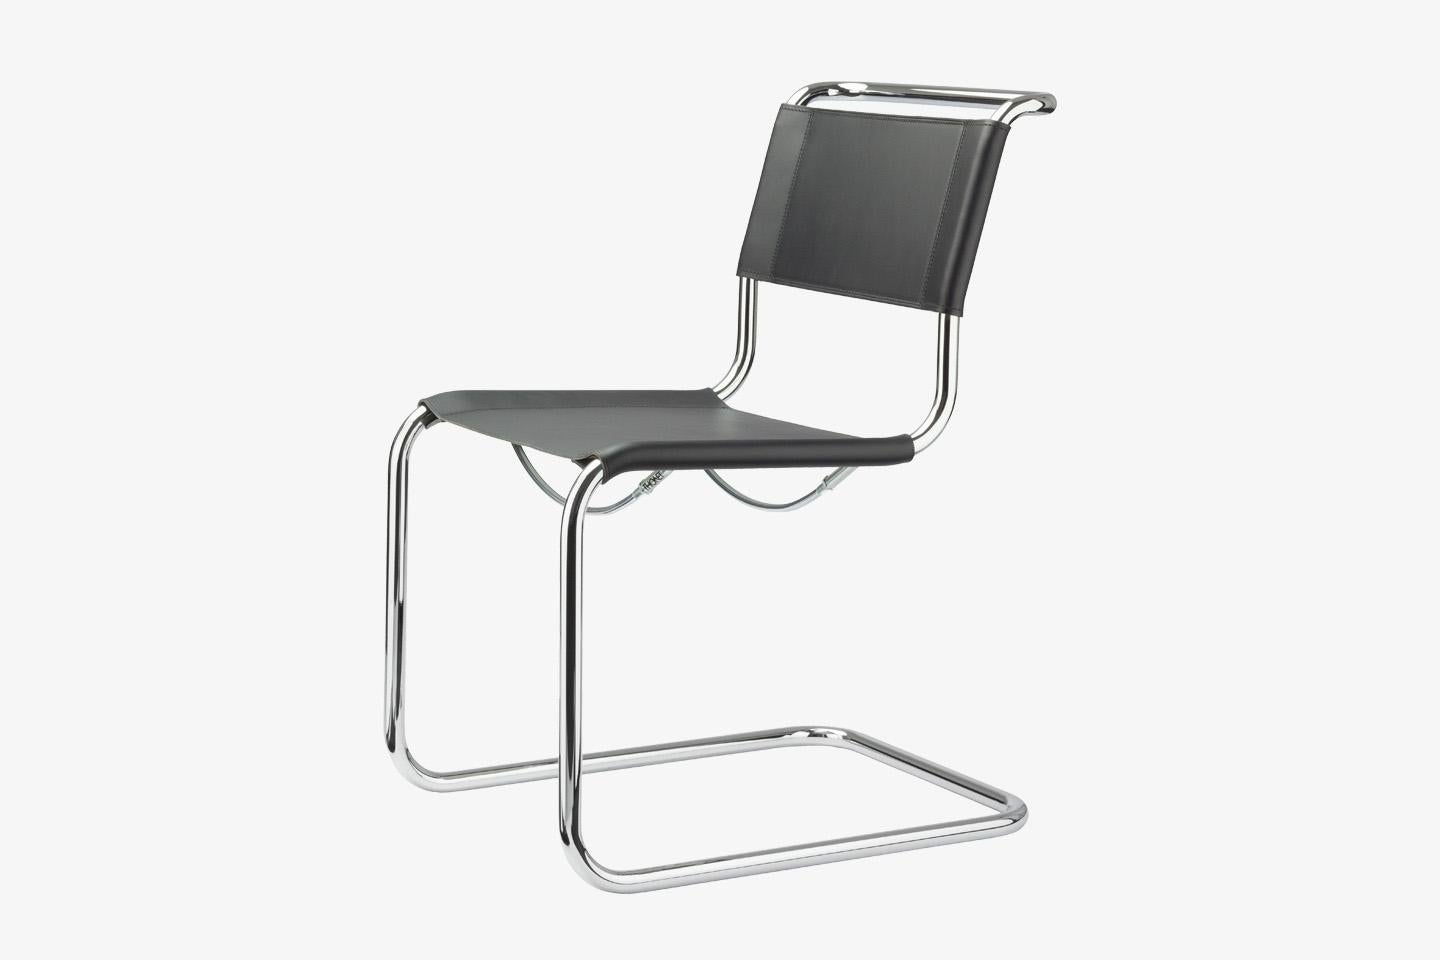 Une forme cubique, un design clair, des proportions fines et un mouvement de flexion : Le développement des chaises luge perfectionnées S 33 et S 34, parmi les premières du genre, allie aujourd'hui esprit du temps et sens de la tradition. 